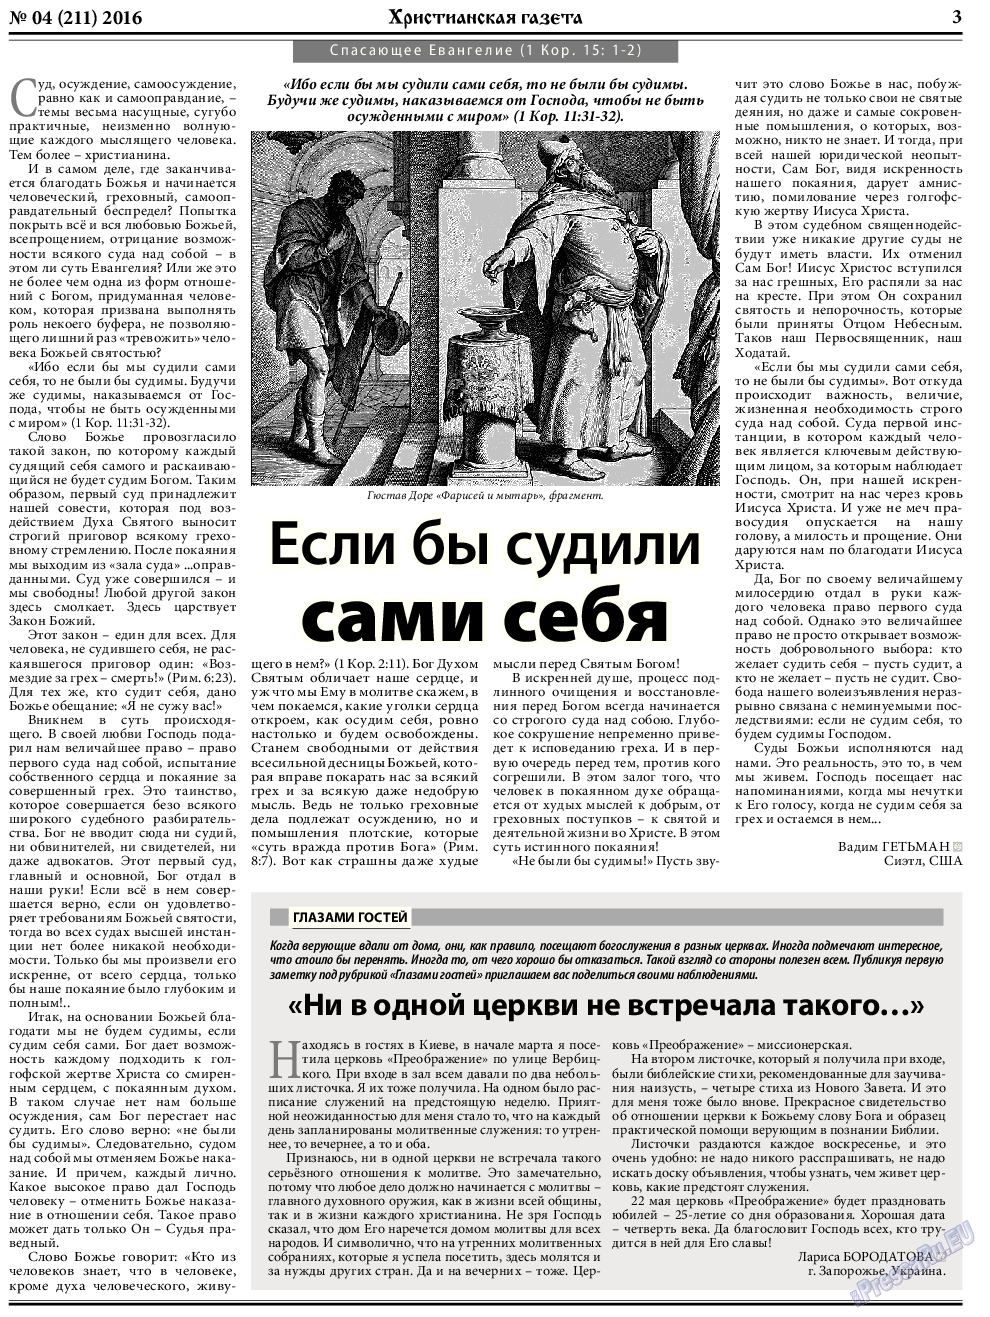 Христианская газета, газета. 2016 №4 стр.3